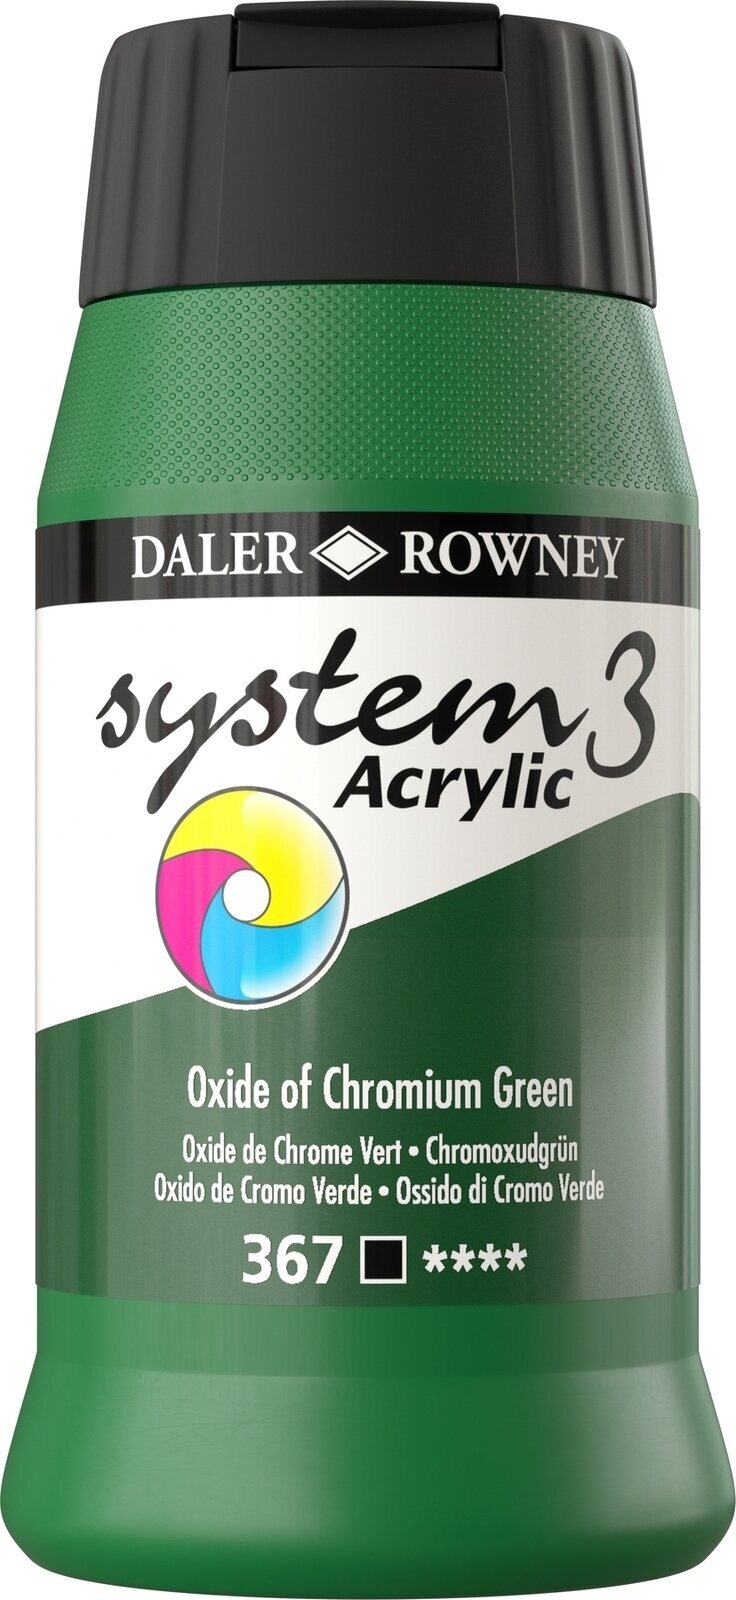 Pintura acrílica Daler Rowney System3 Acrylic Paint Oxide of Chromium Green 500 ml 1 pc